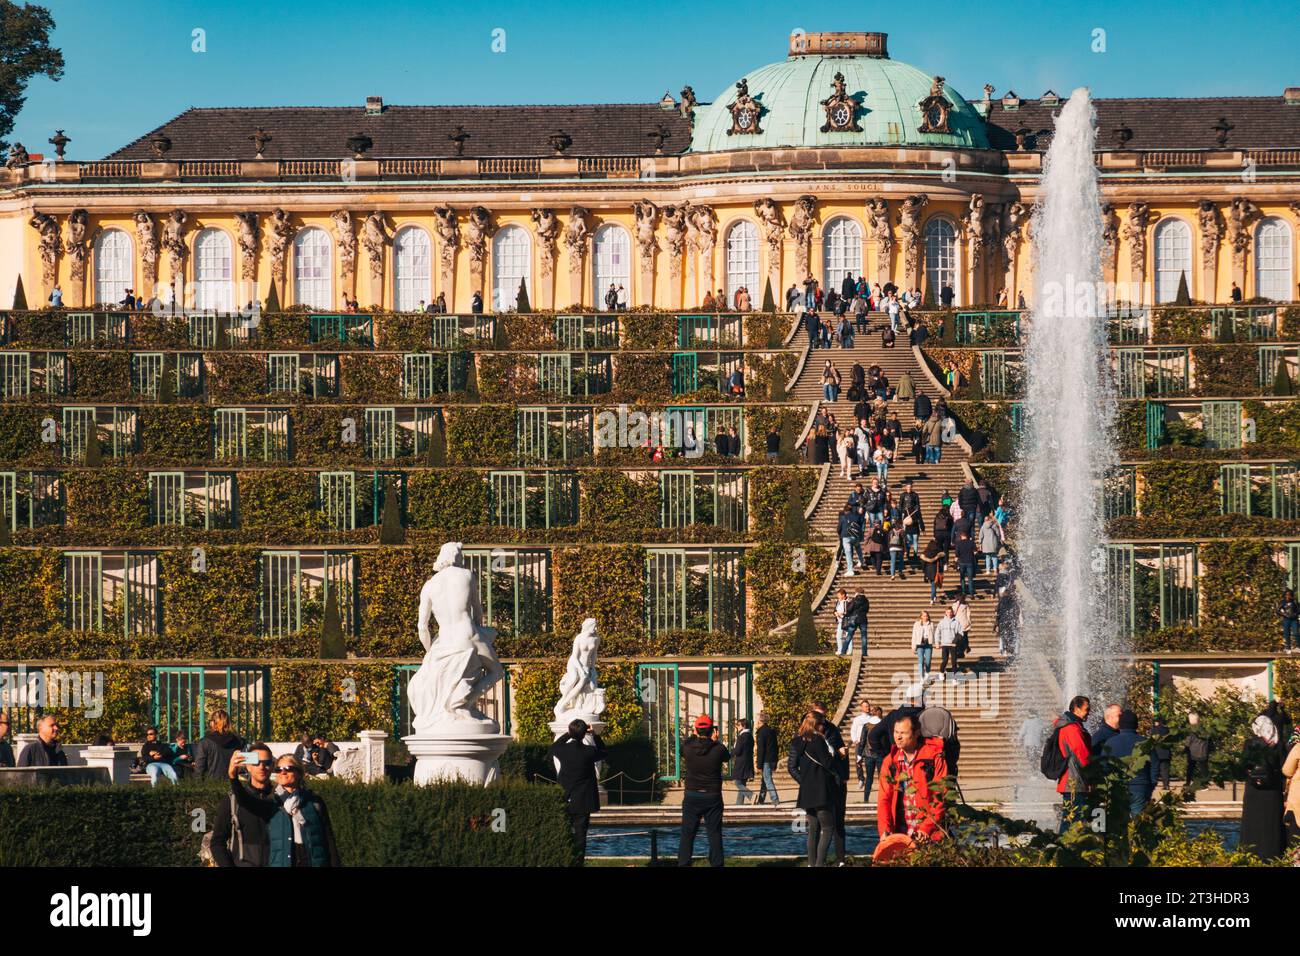 Les visiteurs apprécient l'élégante façade et les jardins en terrasses du palais de Sanssouci à Potsdam, en Allemagne, par une journée claire d'automne Banque D'Images